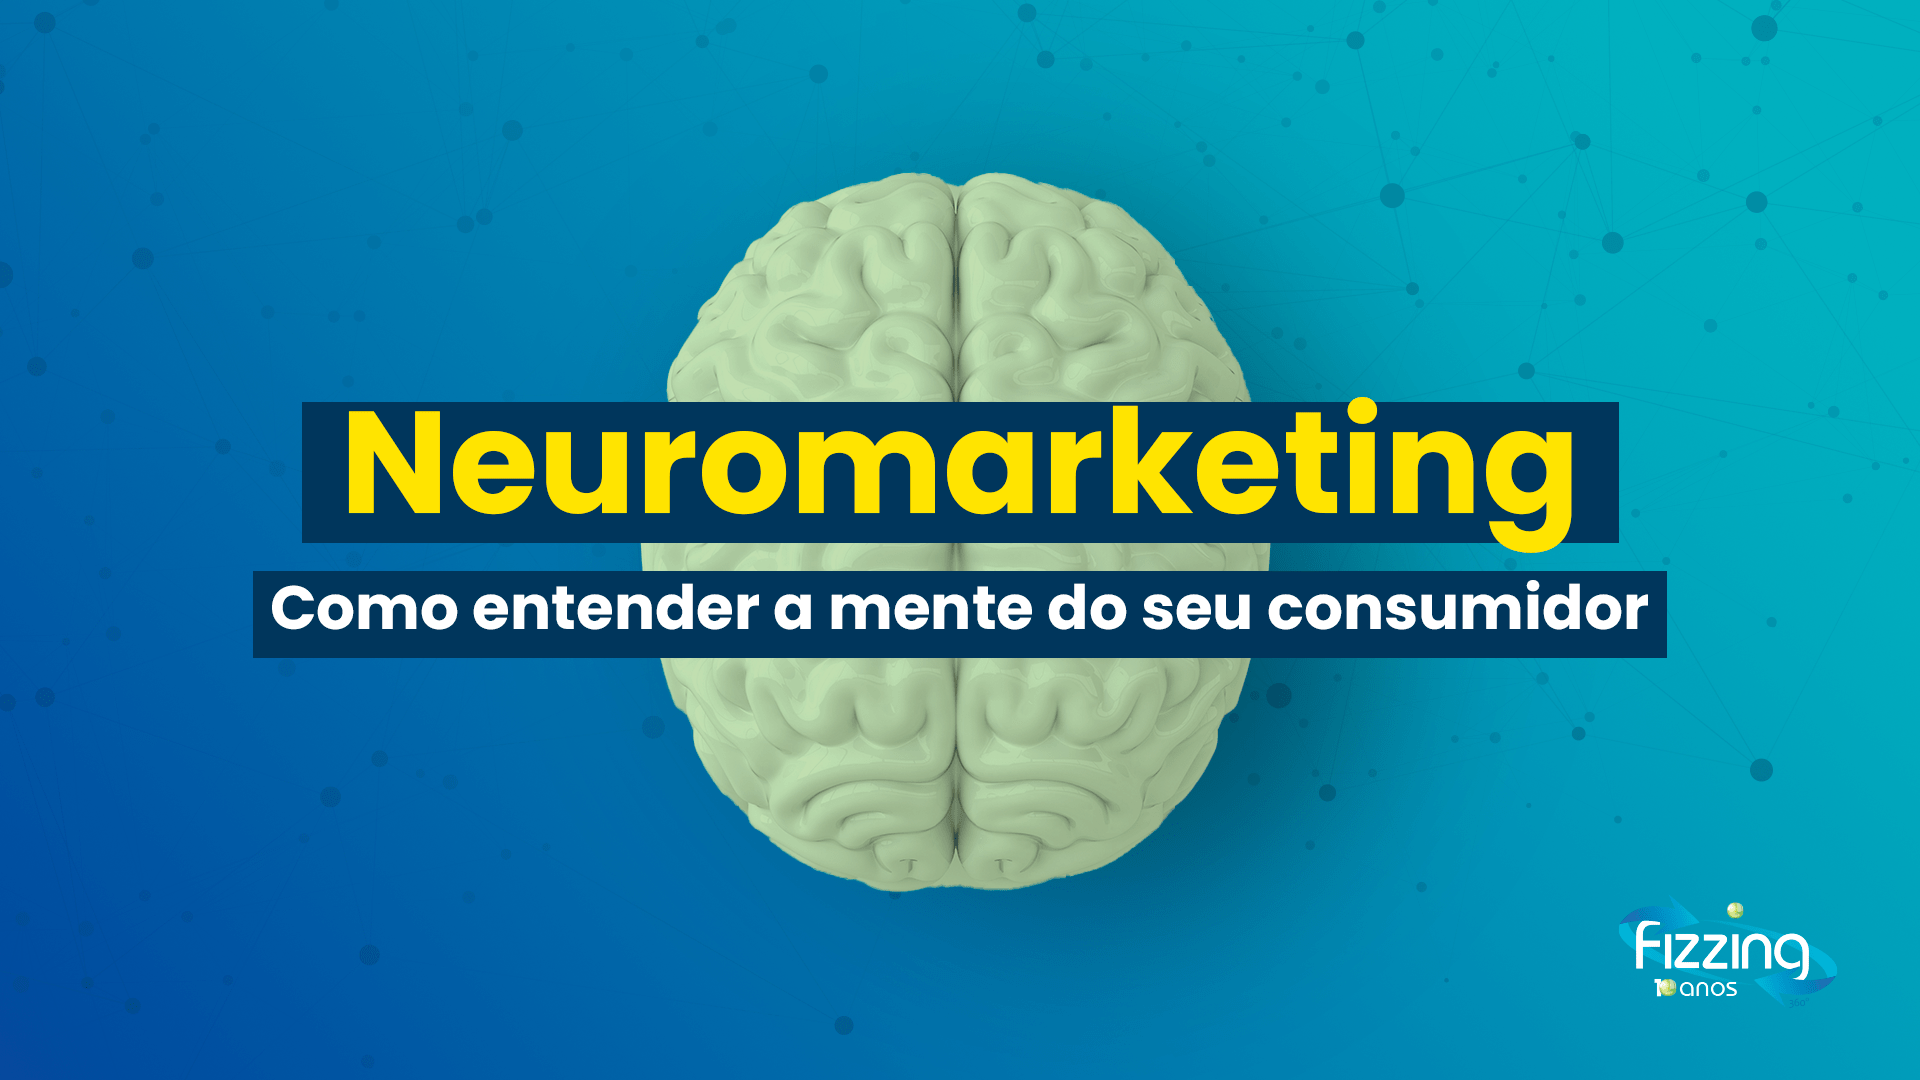 Imagem de um cérebro em um fundo azul e texto "Neuromarketing: como entender a mente do consumidor"